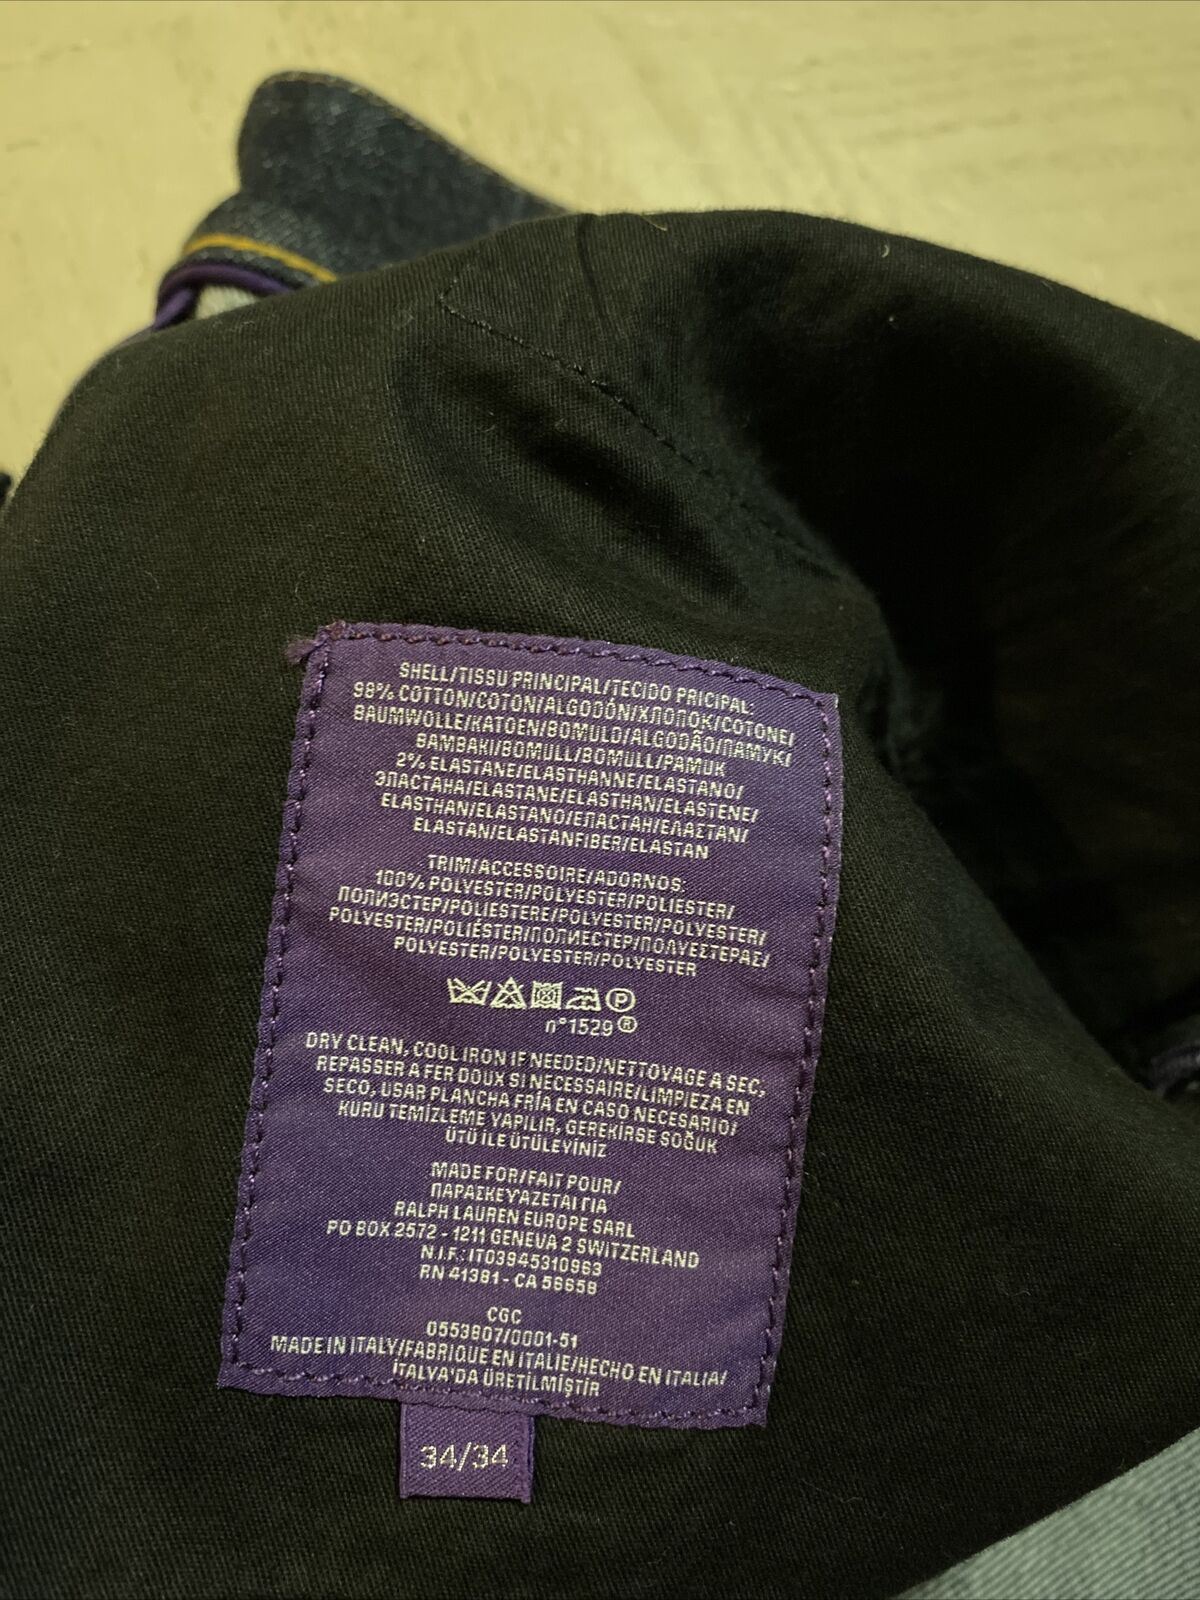 Neu mit Etikett: 495 $ Ralph Lauren Purple Label Herren Straight Denim Jeans Hose Blau 34W/34L